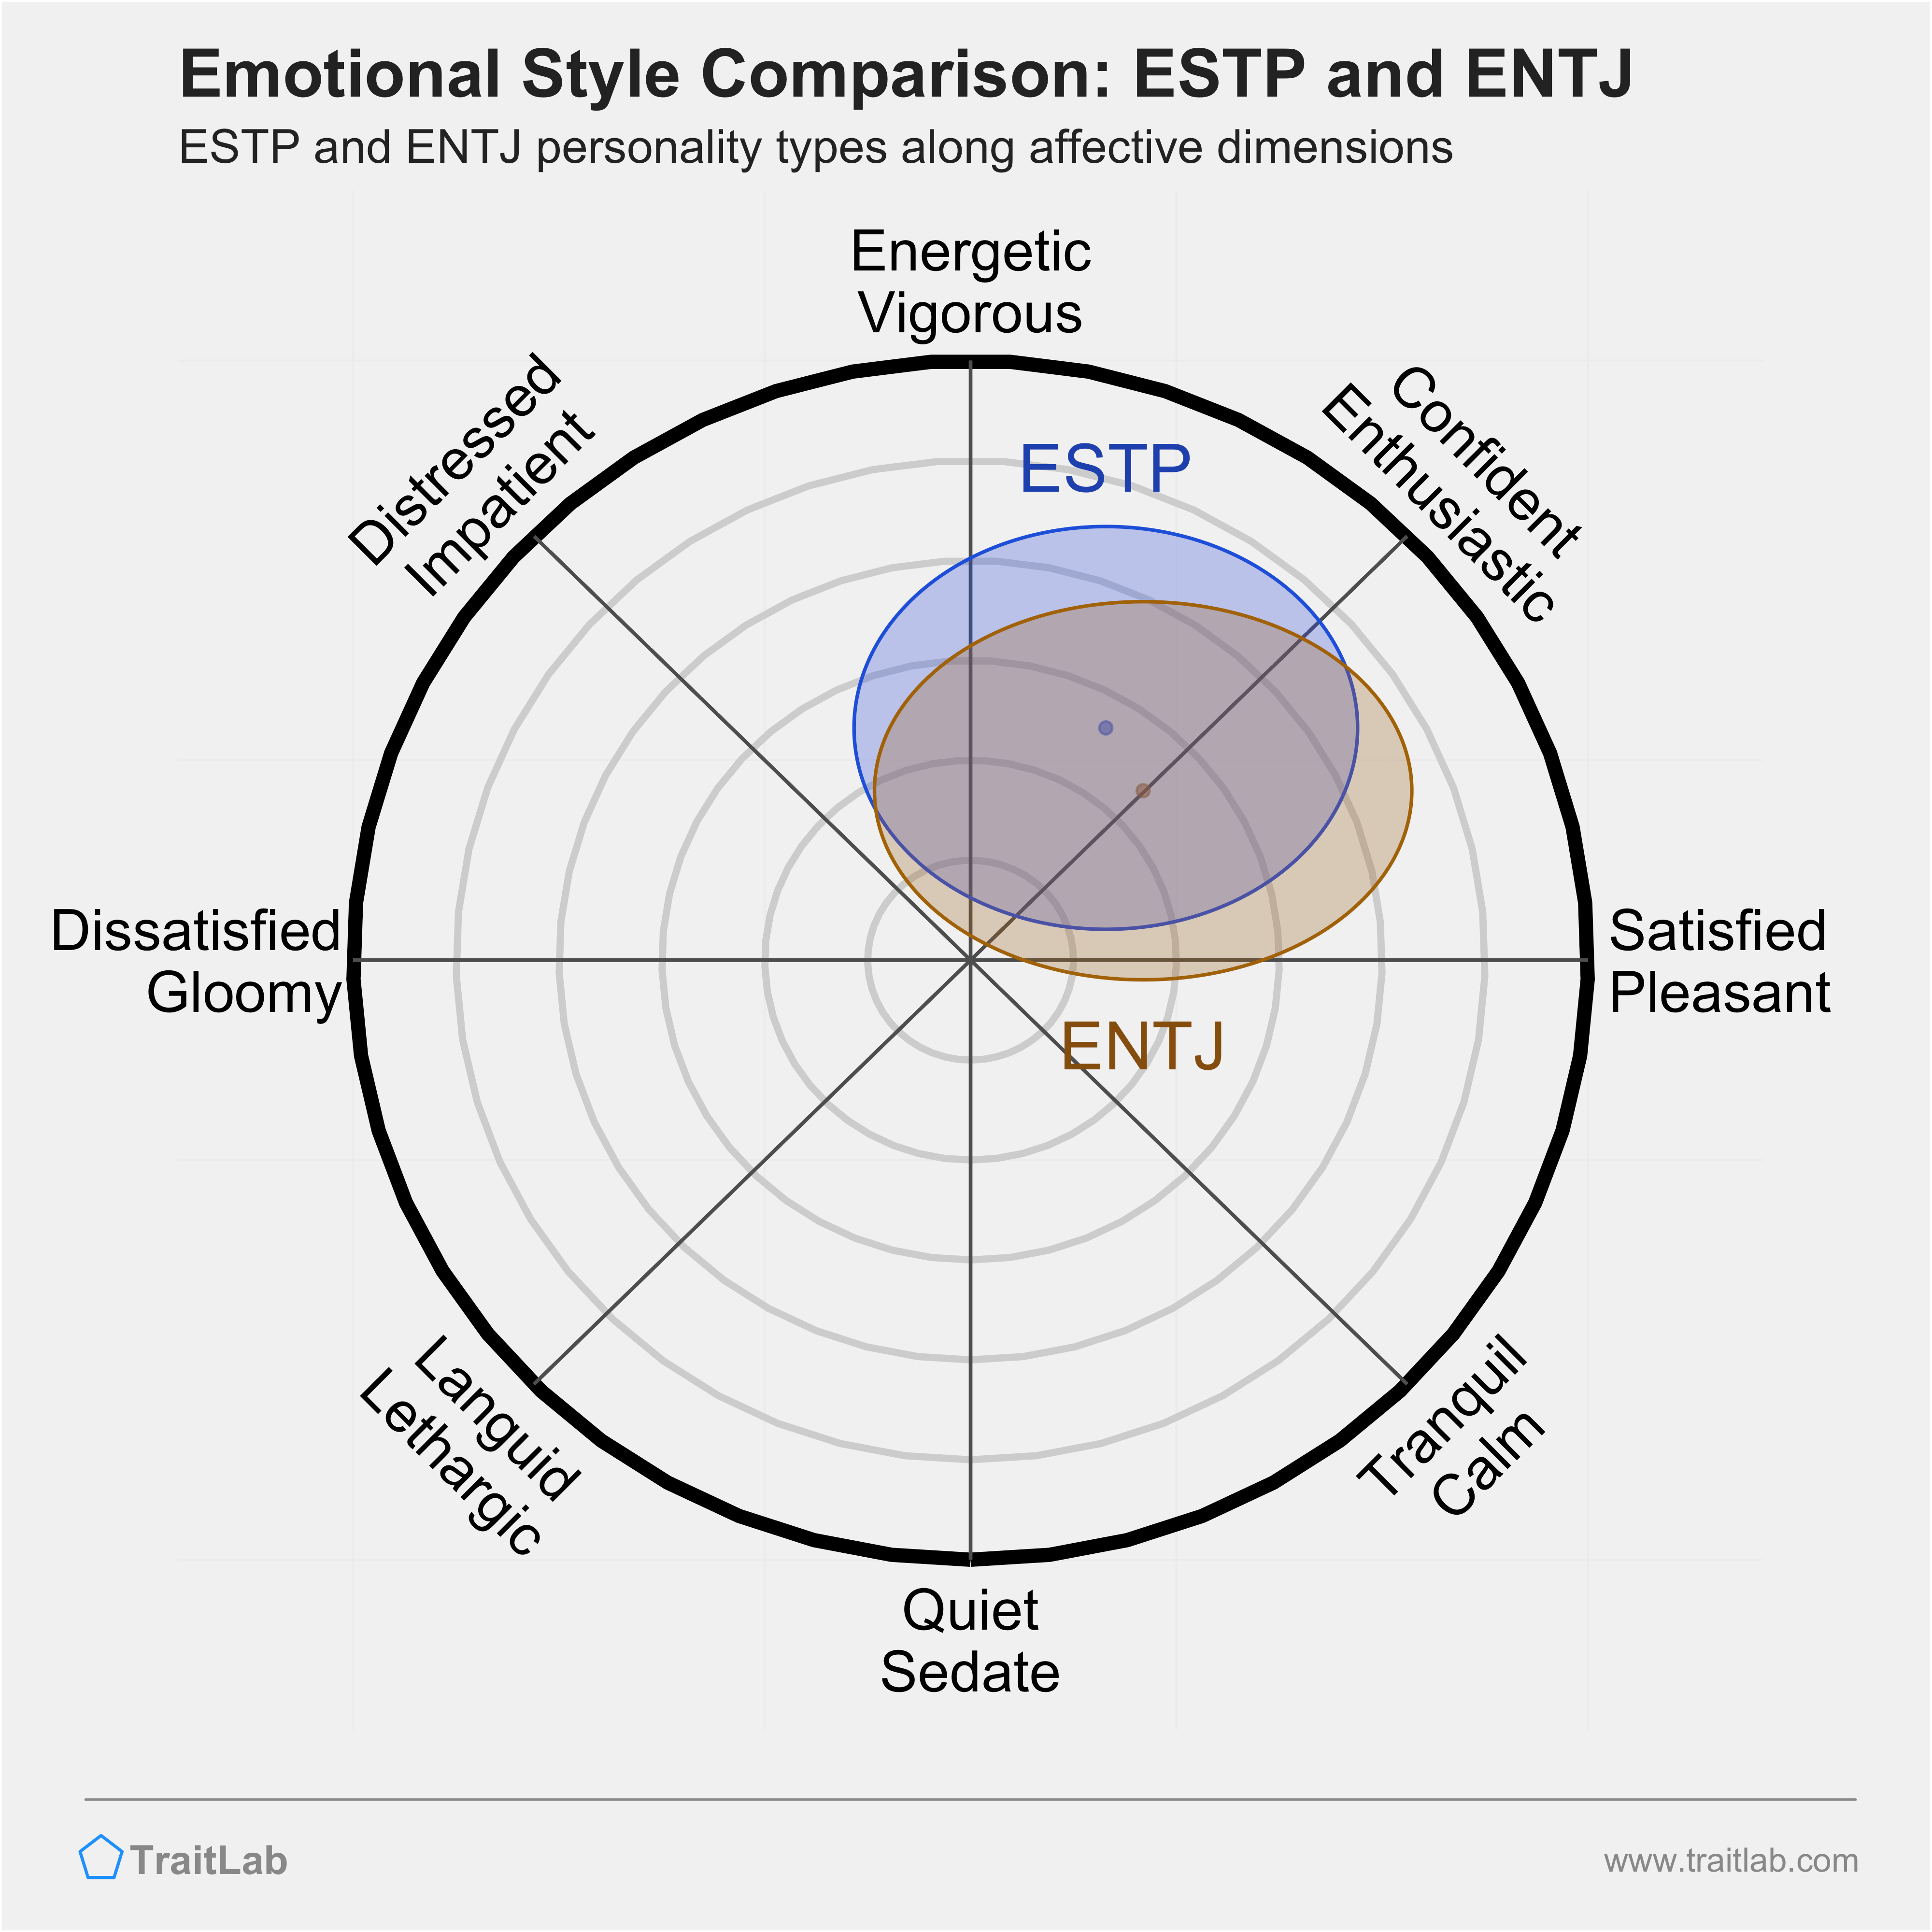 ESTP and ENTJ comparison across emotional (affective) dimensions